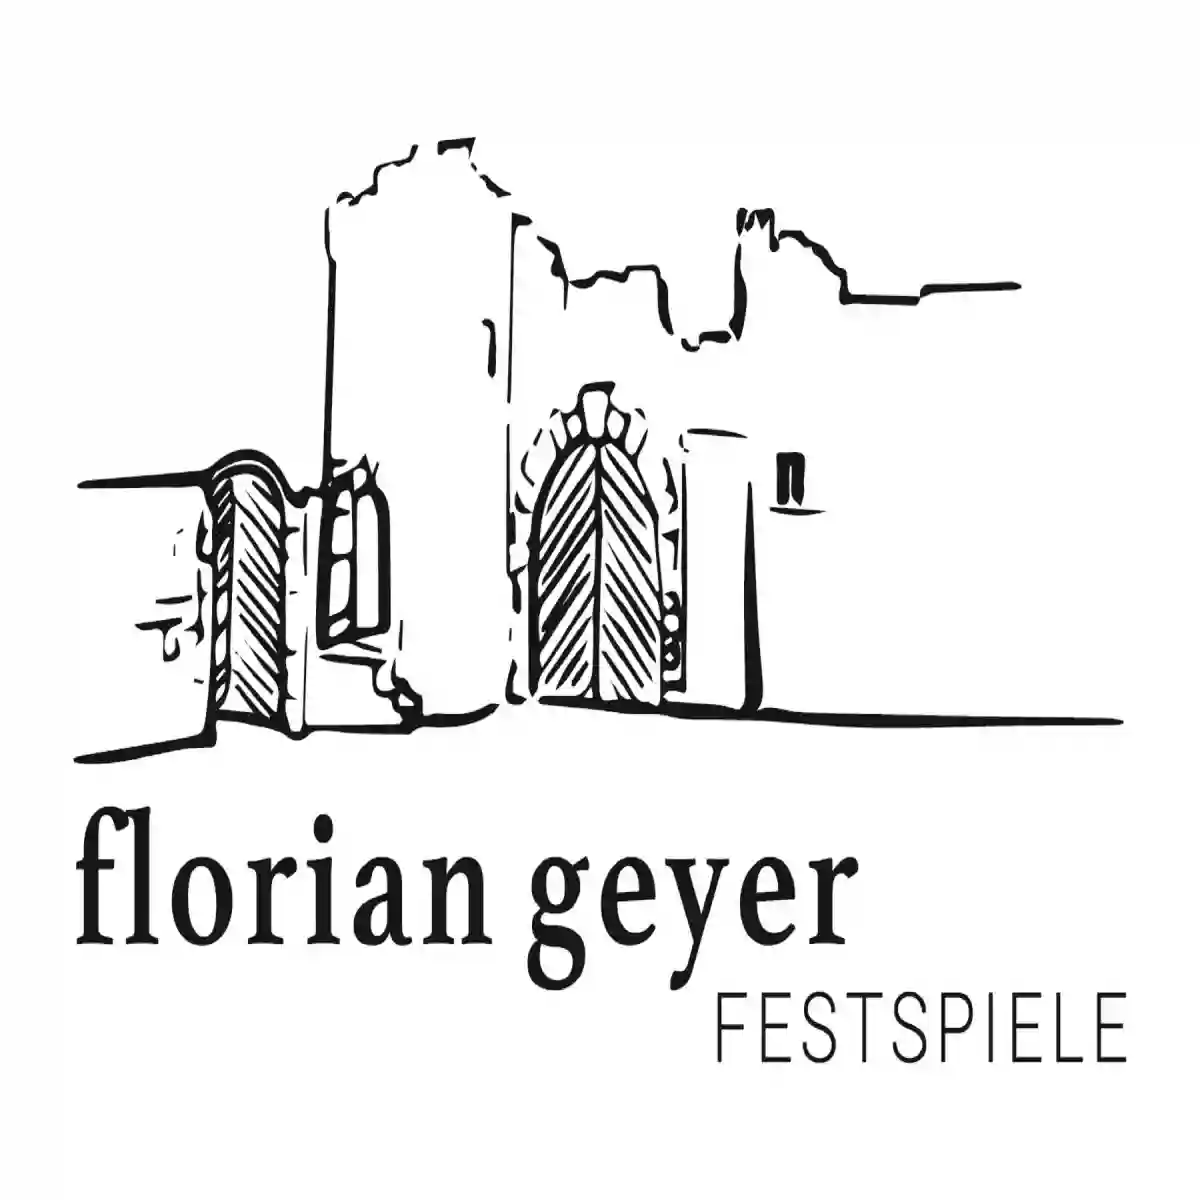 Festspielgemeinschaft Florian Geyer